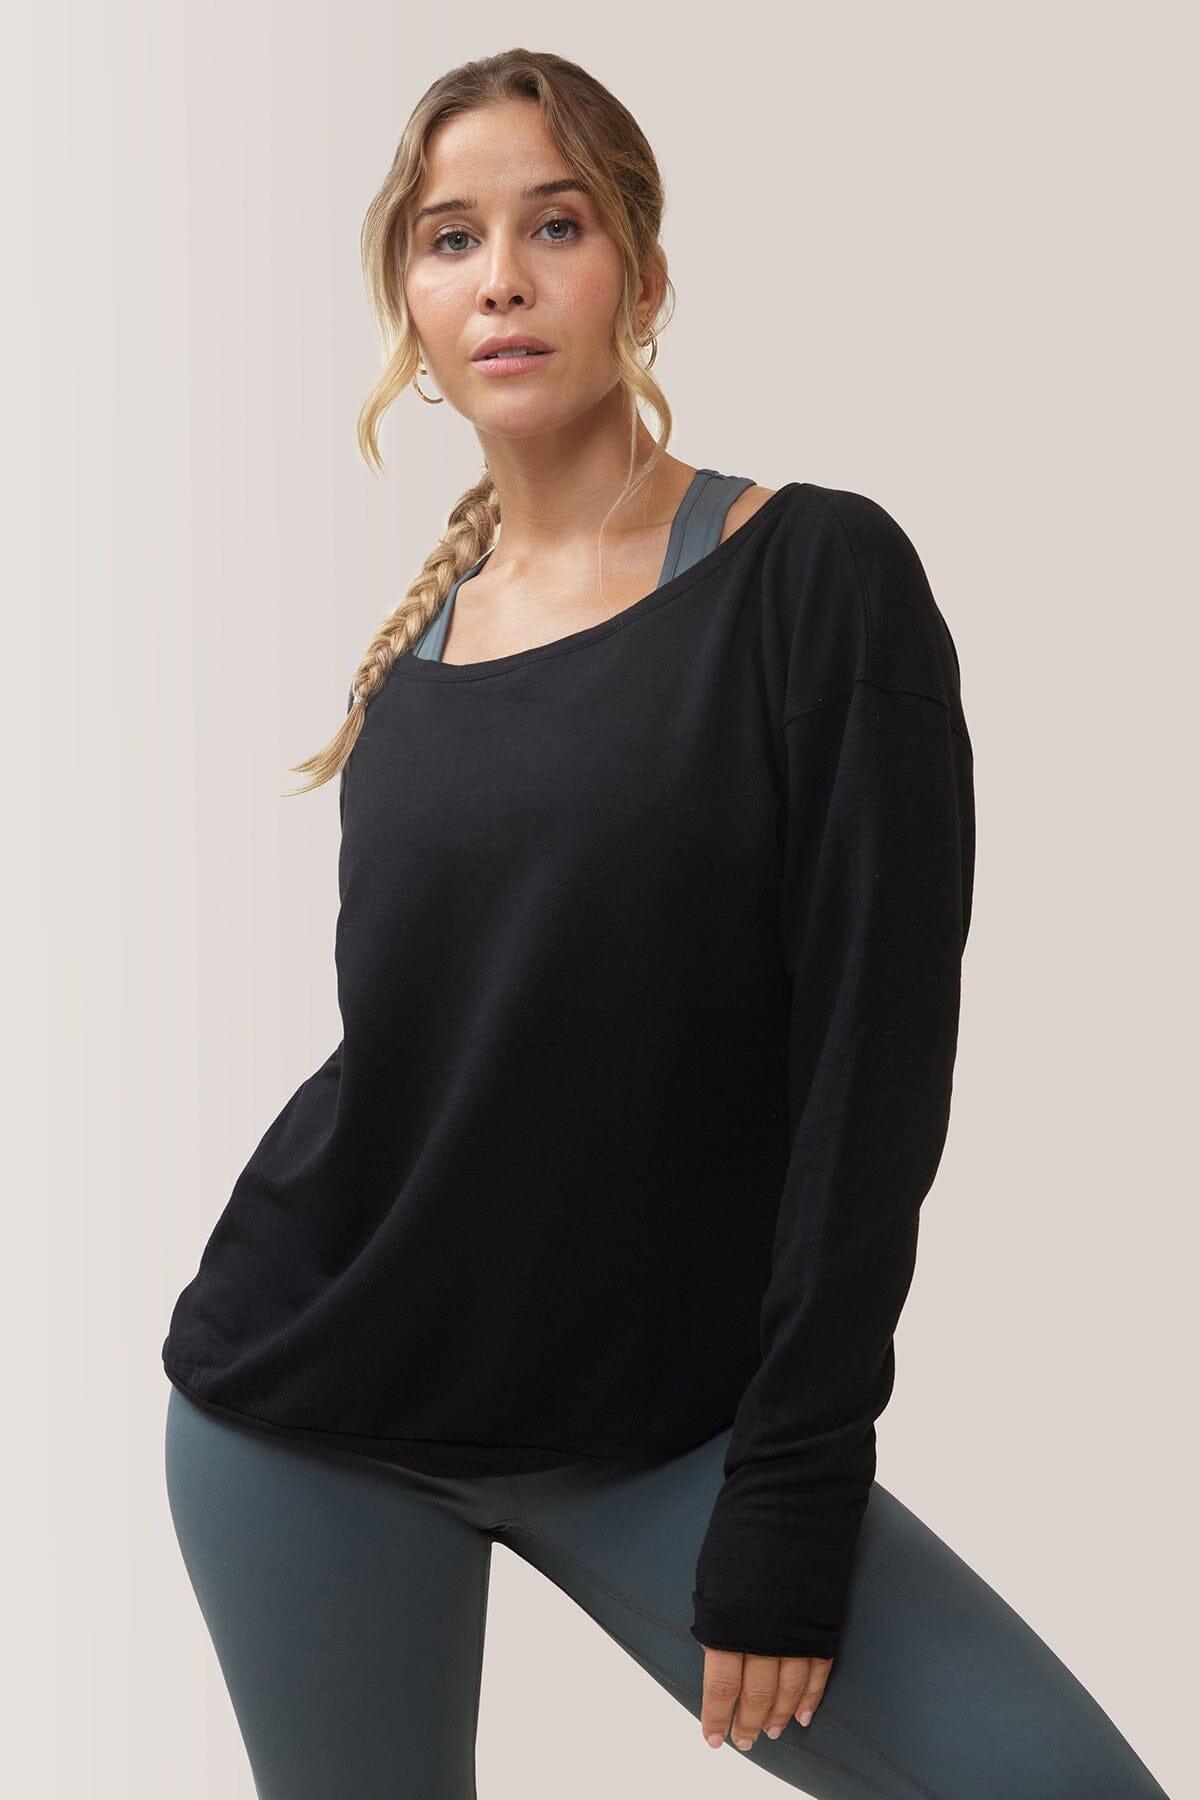 Femme qui porte le chandail à manche longue Cozy de Rose Boreal./ Women wearing the Cozy Long Sleeve Shirt by Rose Boreal. -Total Eclipse